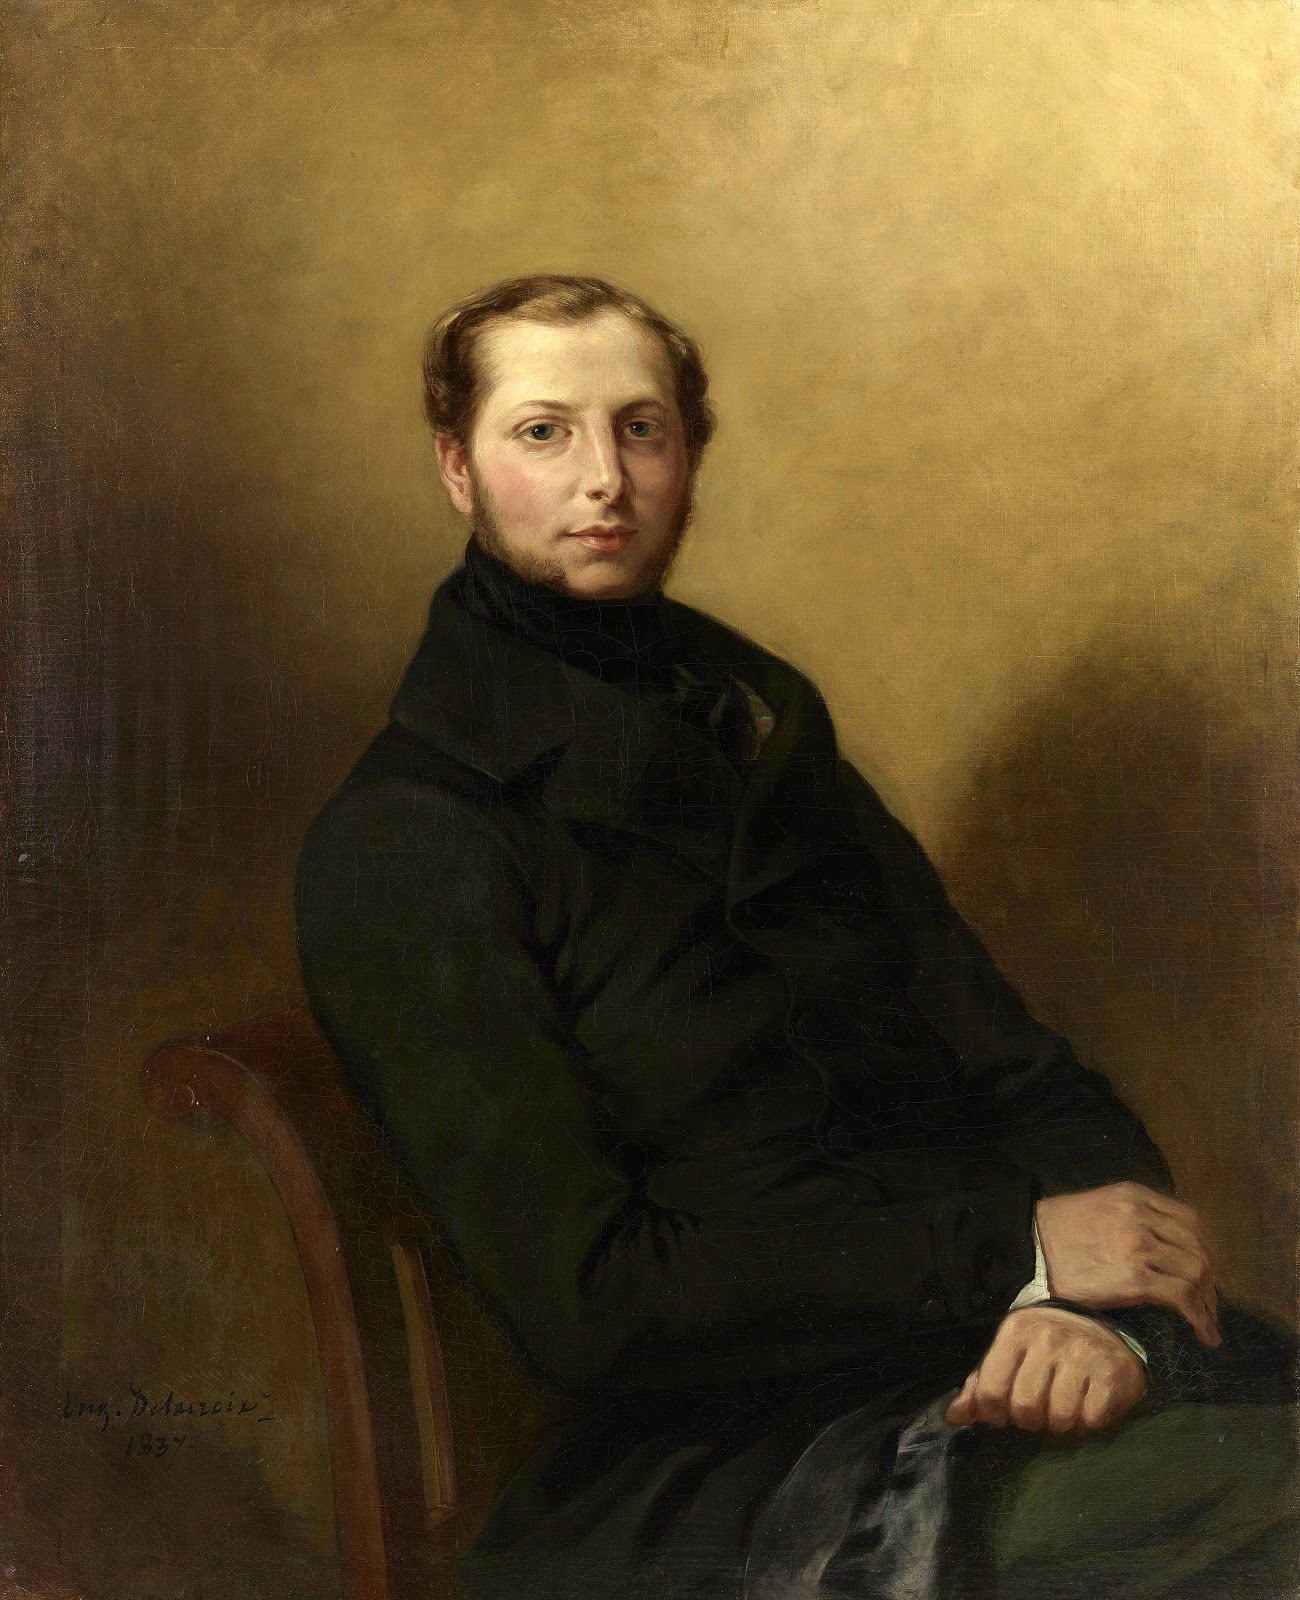 Eugene+Delacroix-1798-1863 (186).jpg